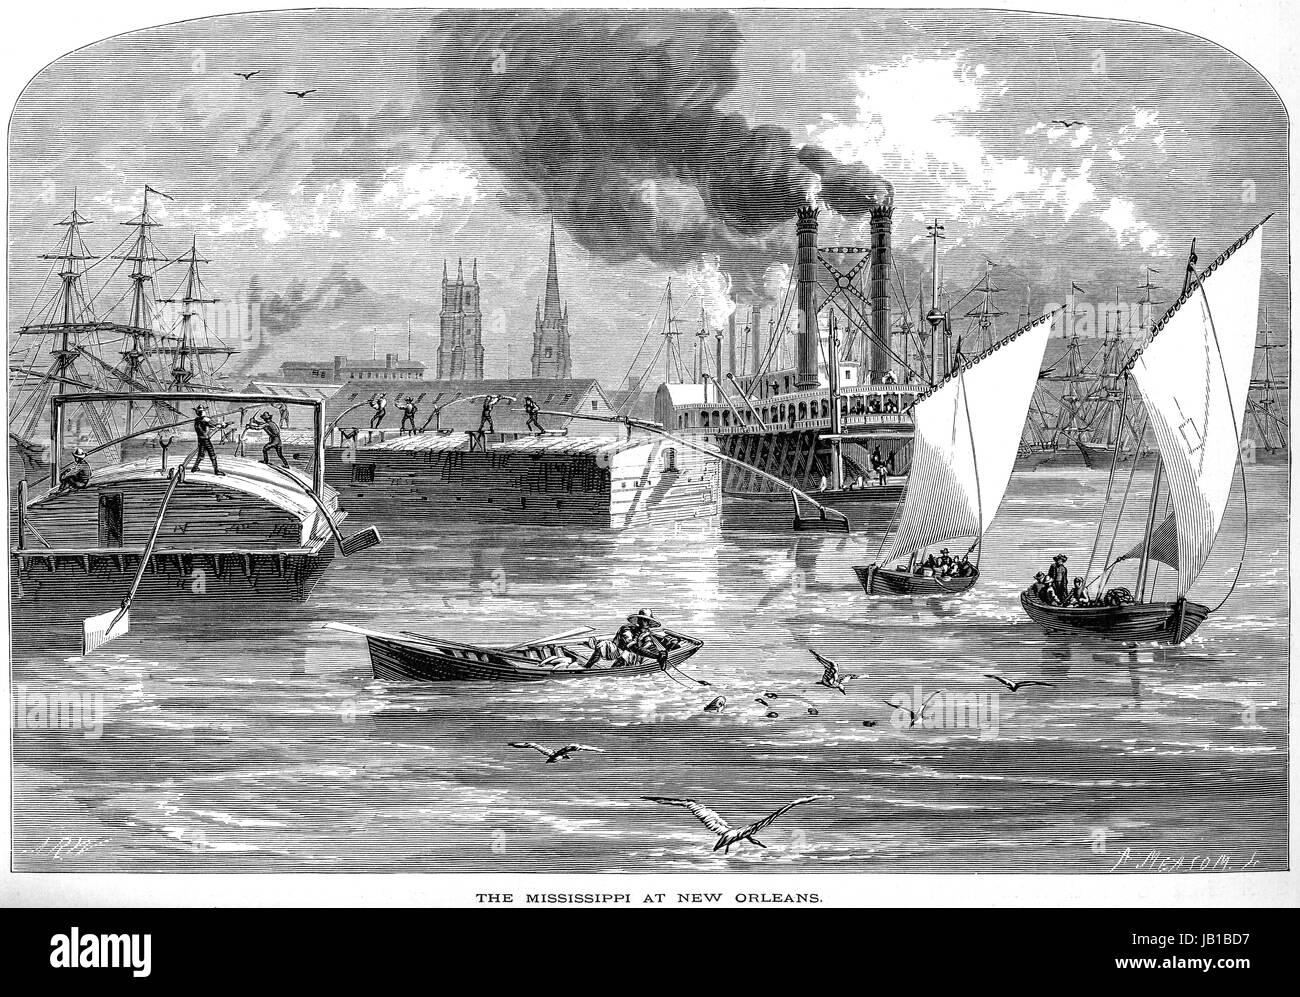 Eine Gravur von Mississippi in New Orleans mit hoher Auflösung aus einem Buch gescannt gedruckt im Jahre 1872.  Kostenlos copyright geglaubt. Stockfoto